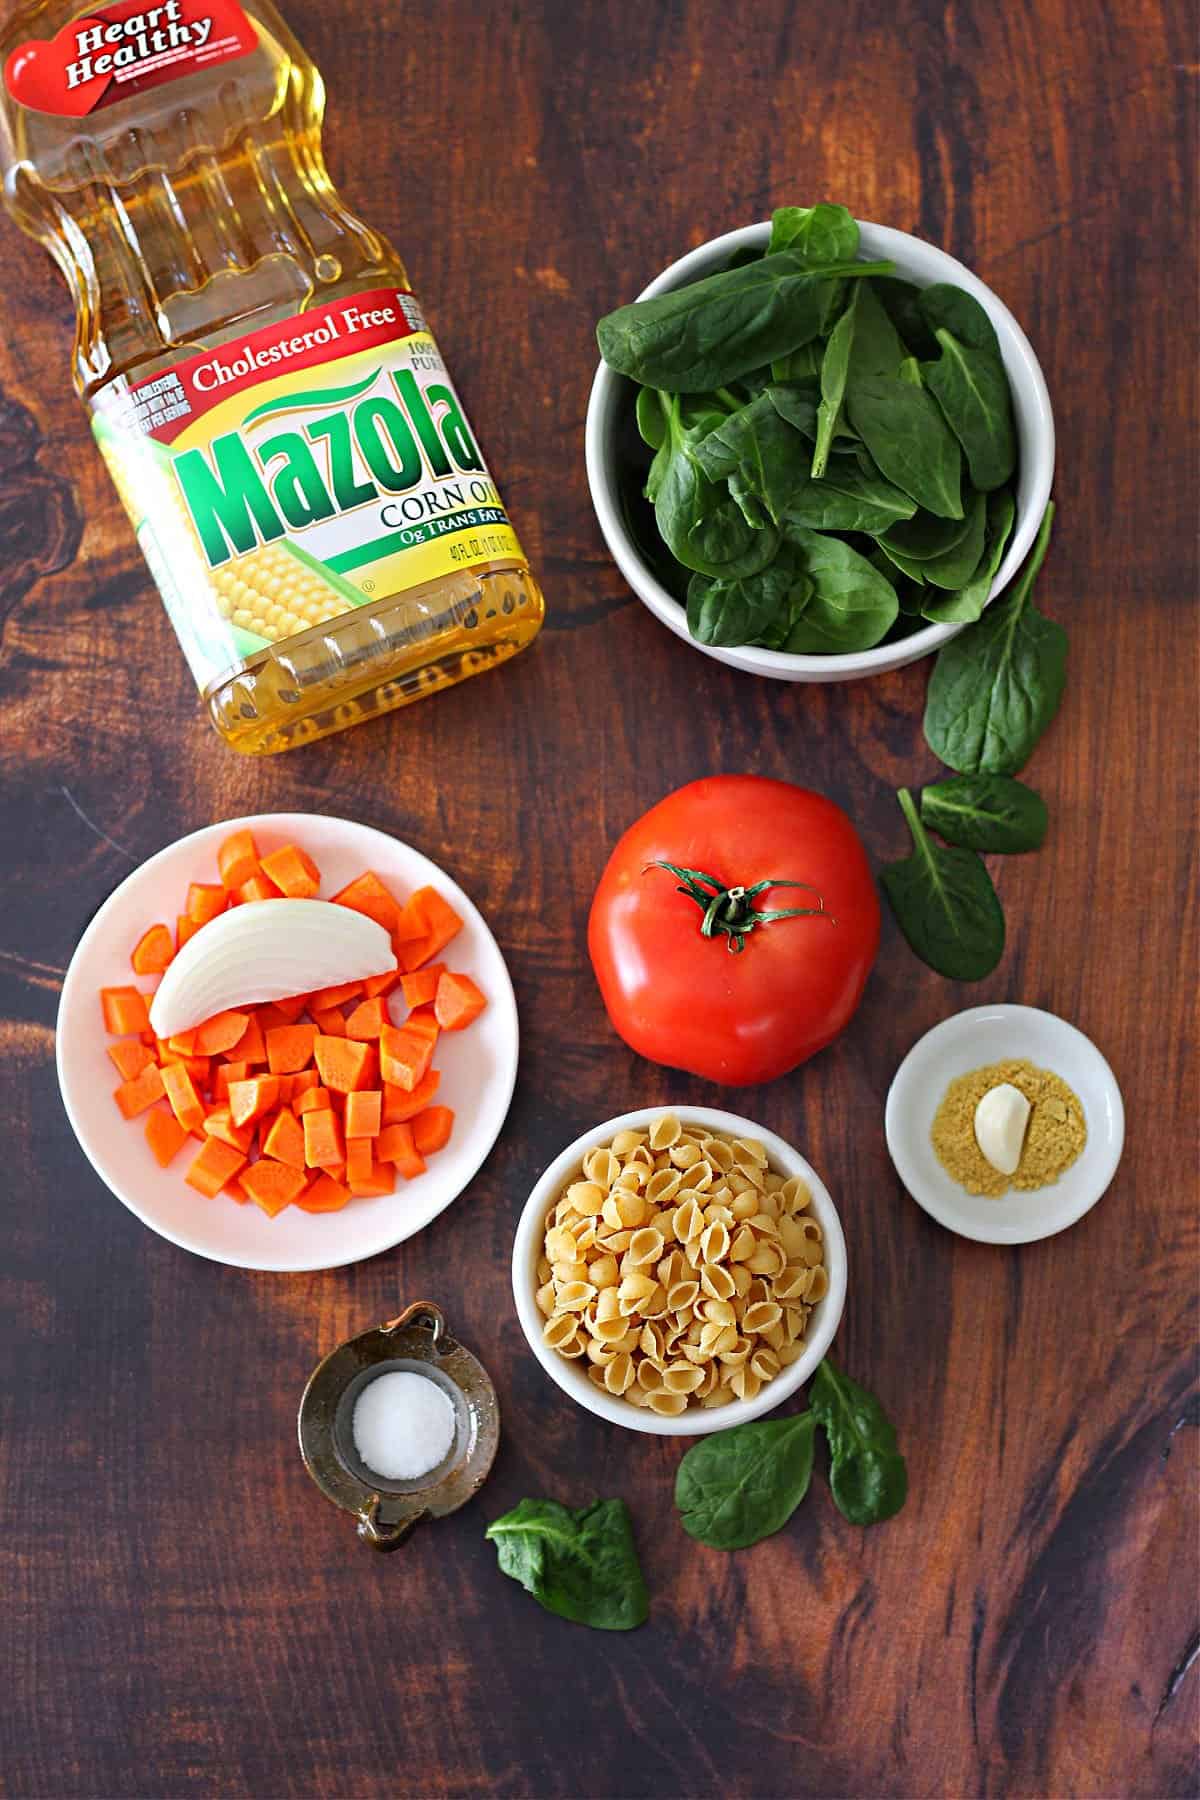 Ingredients to make pasta soup